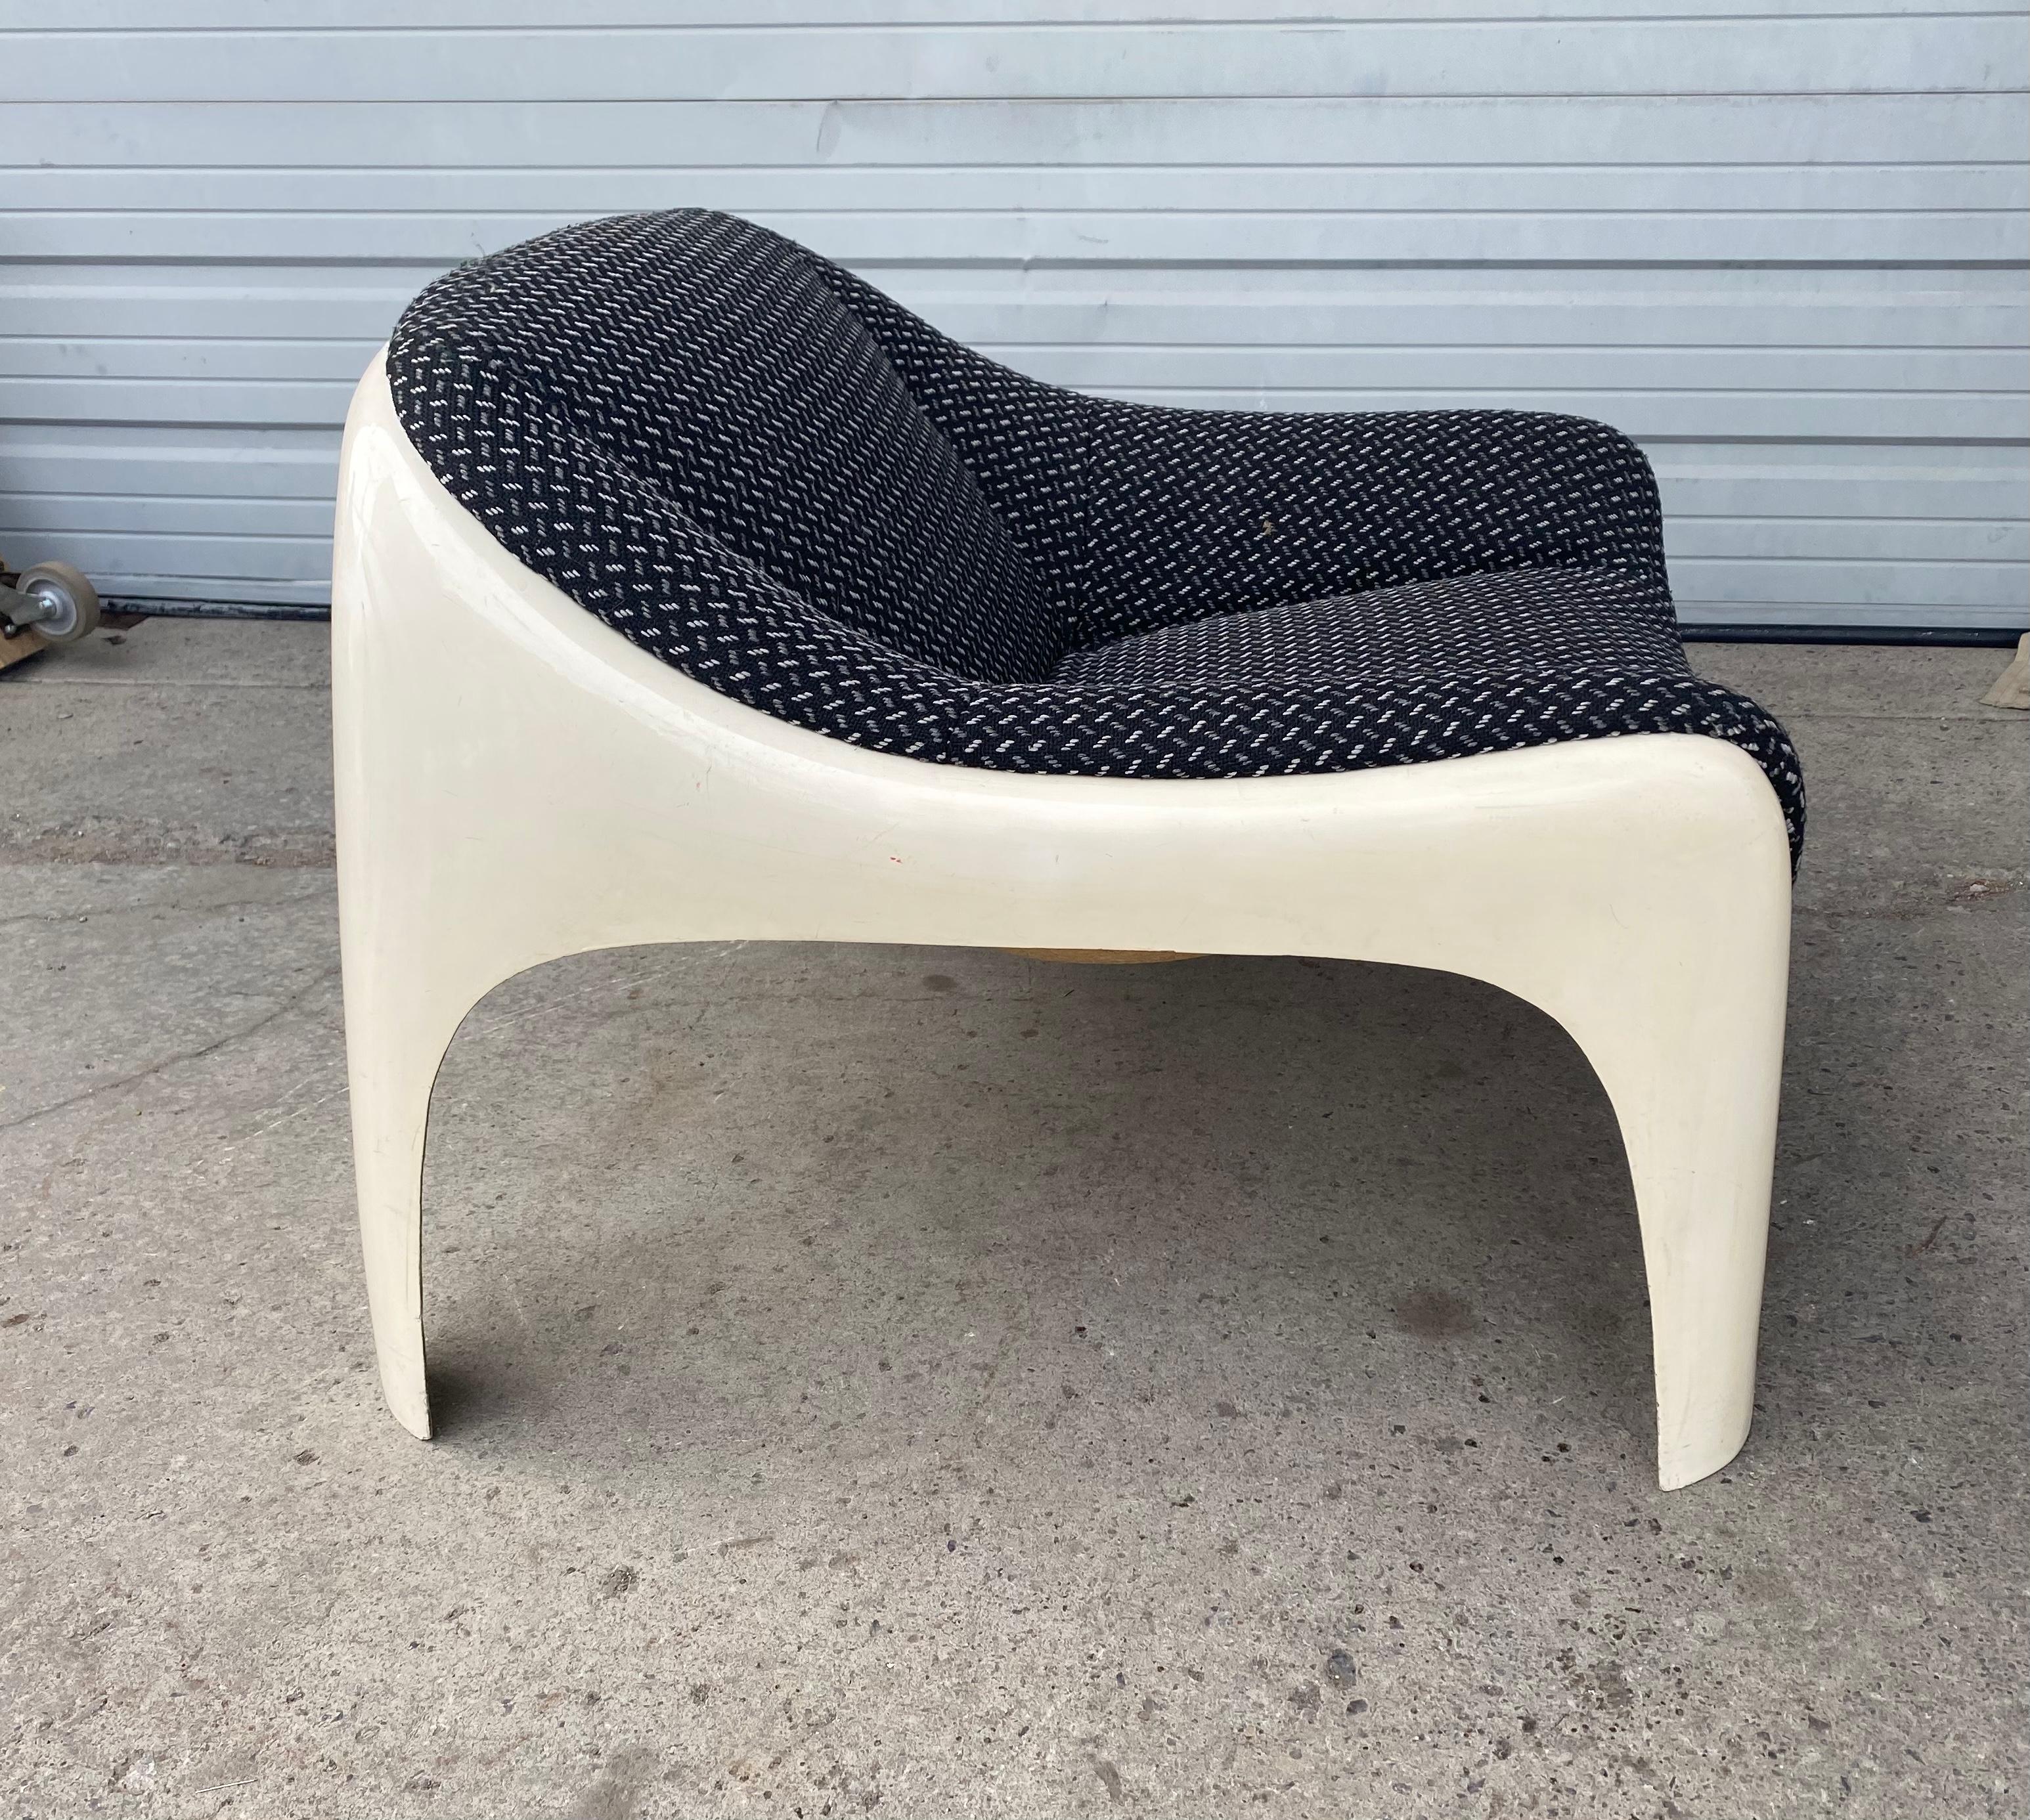 Cette chaise longue moderniste de l'ère spatiale, rarement vue, a été conçue par l'architecte et cofondateur d'Artemide, Sergio Mazza, dans les années 1960. Cette chaise est dotée d'un superbe châssis en fibre de verre blanc et d'un coussin d'assise